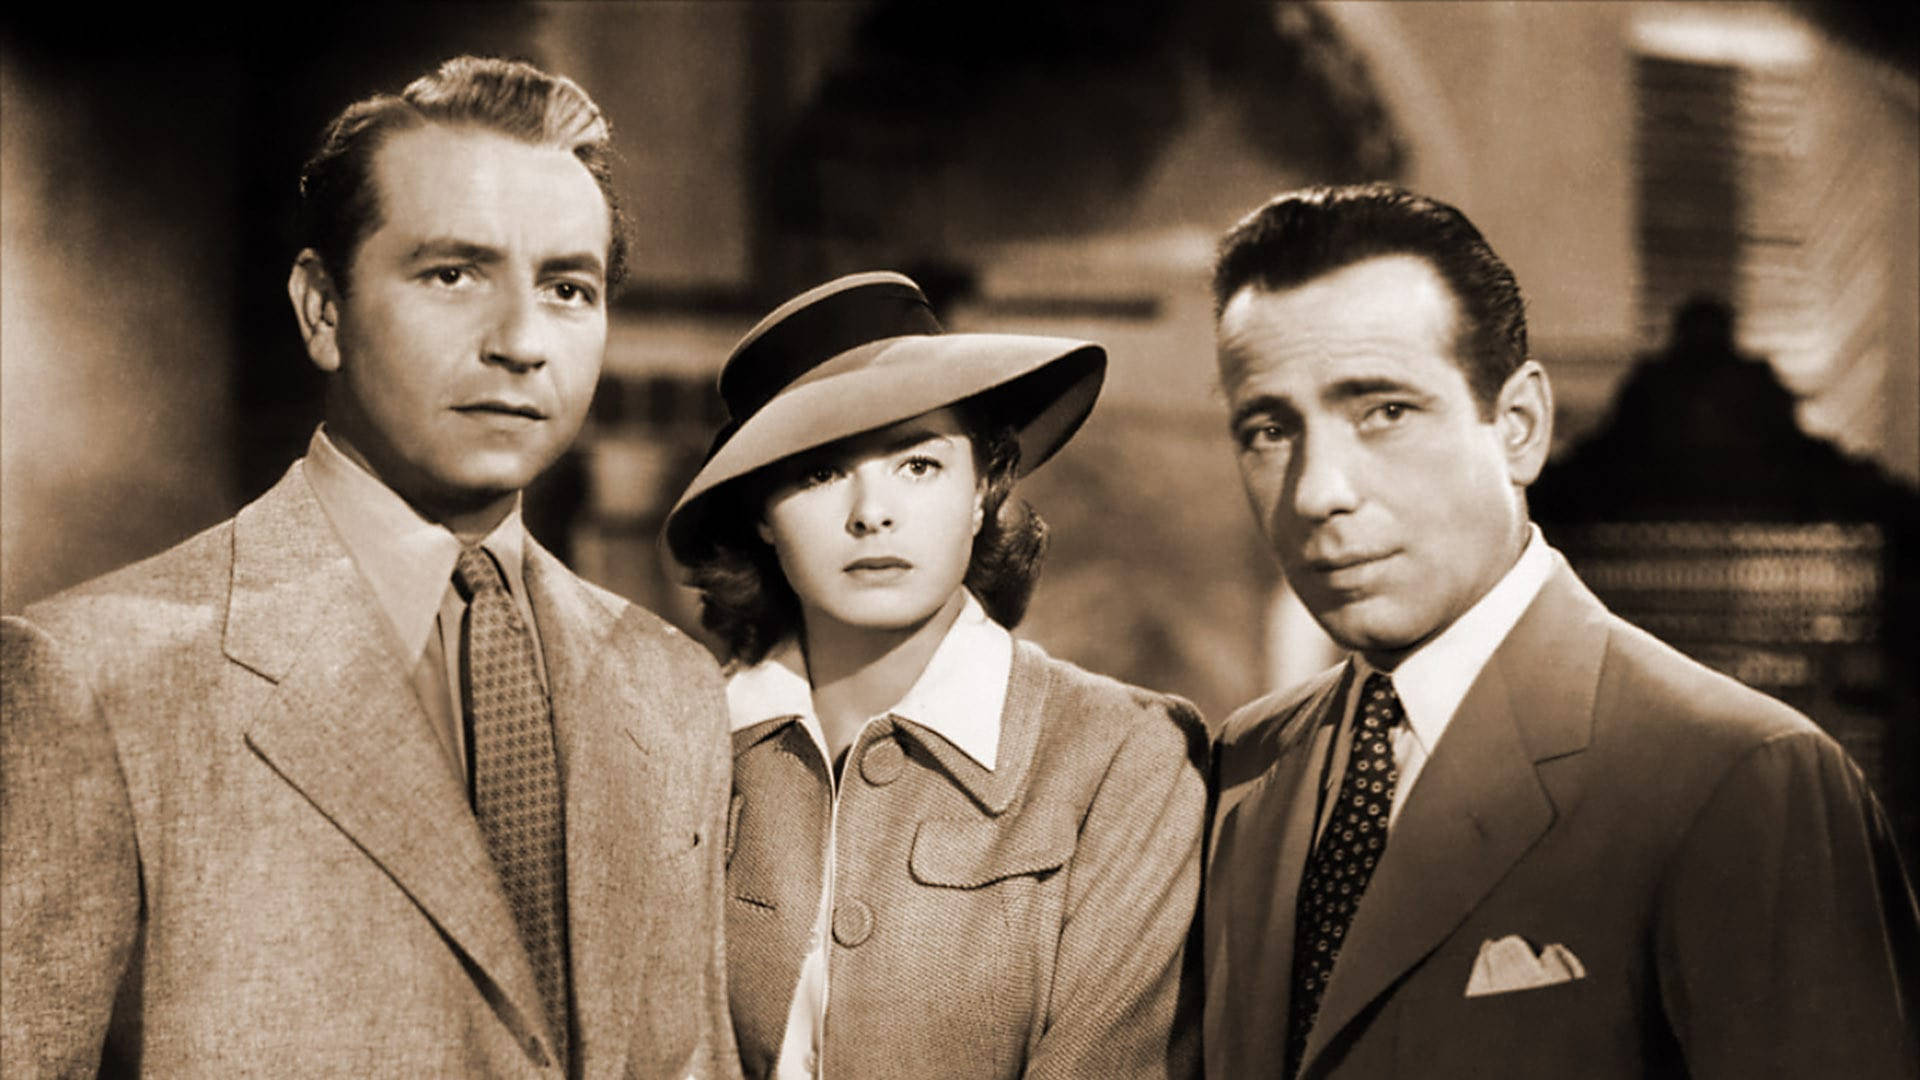 Casablancafilmkaraktärer. Wallpaper